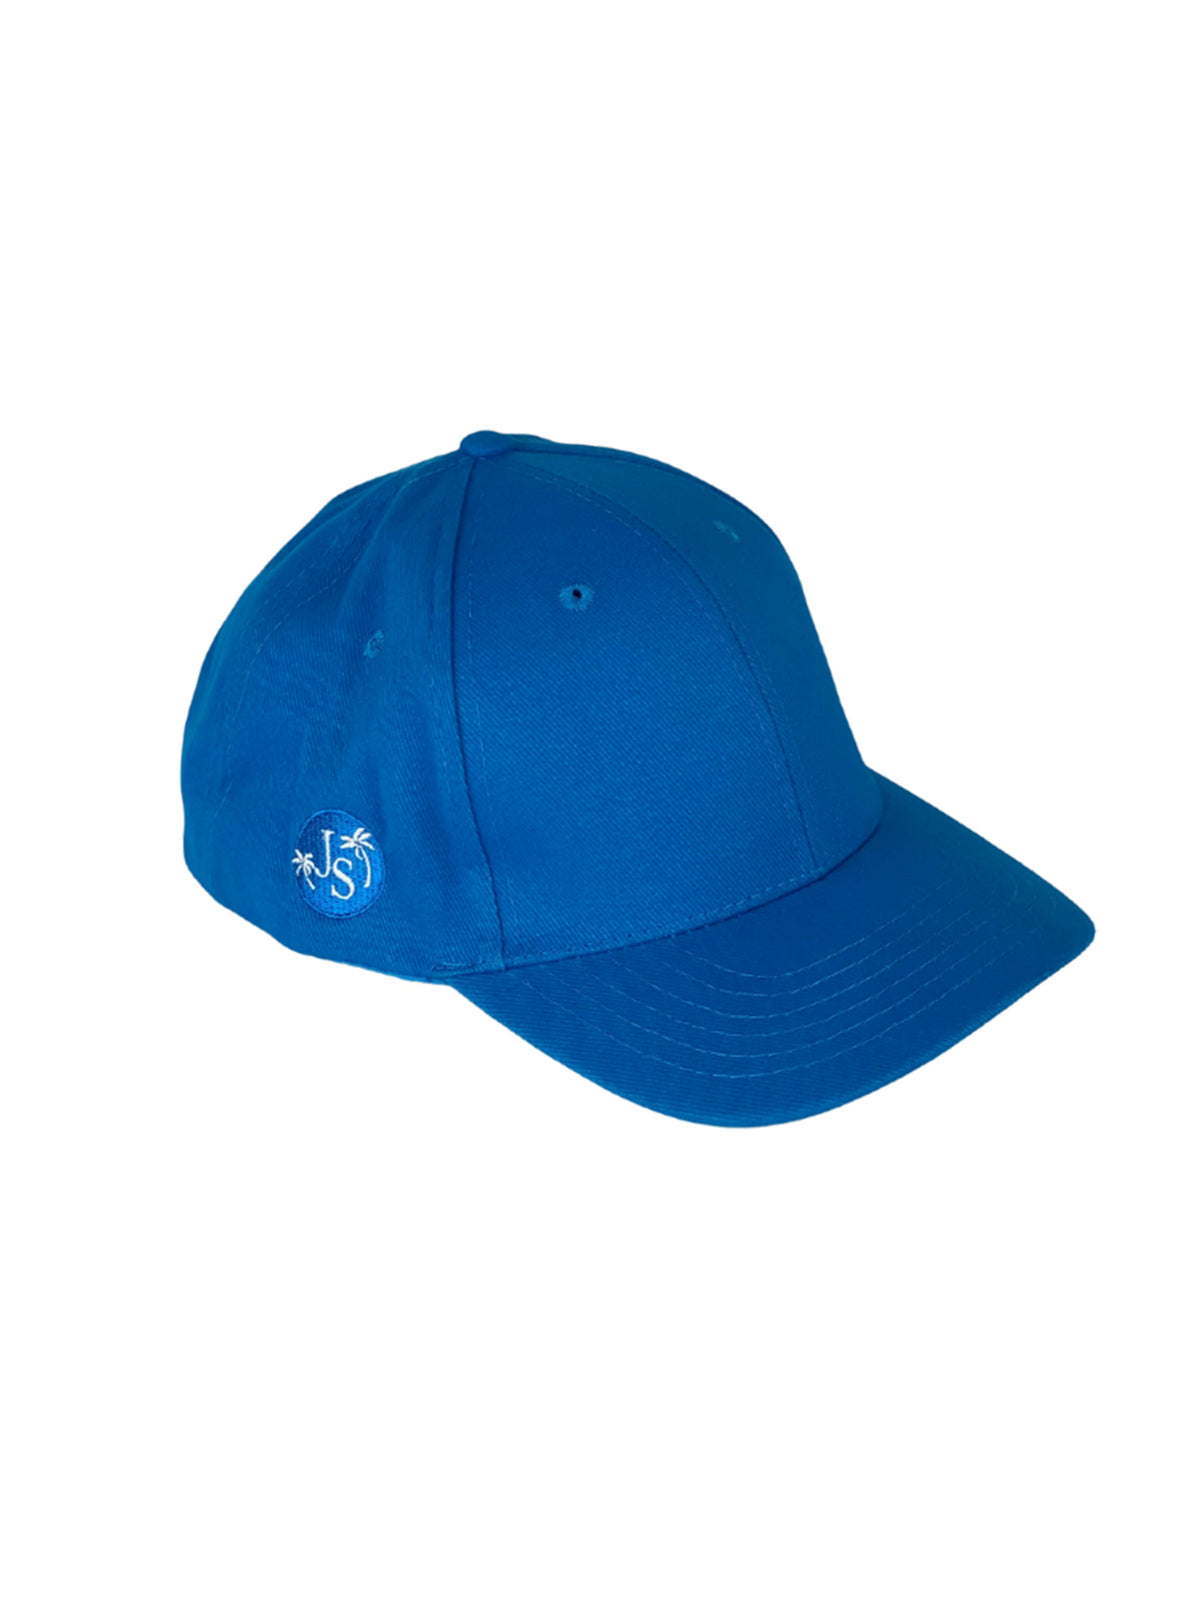 Jimmy Unisex Cotton Cap - Blue